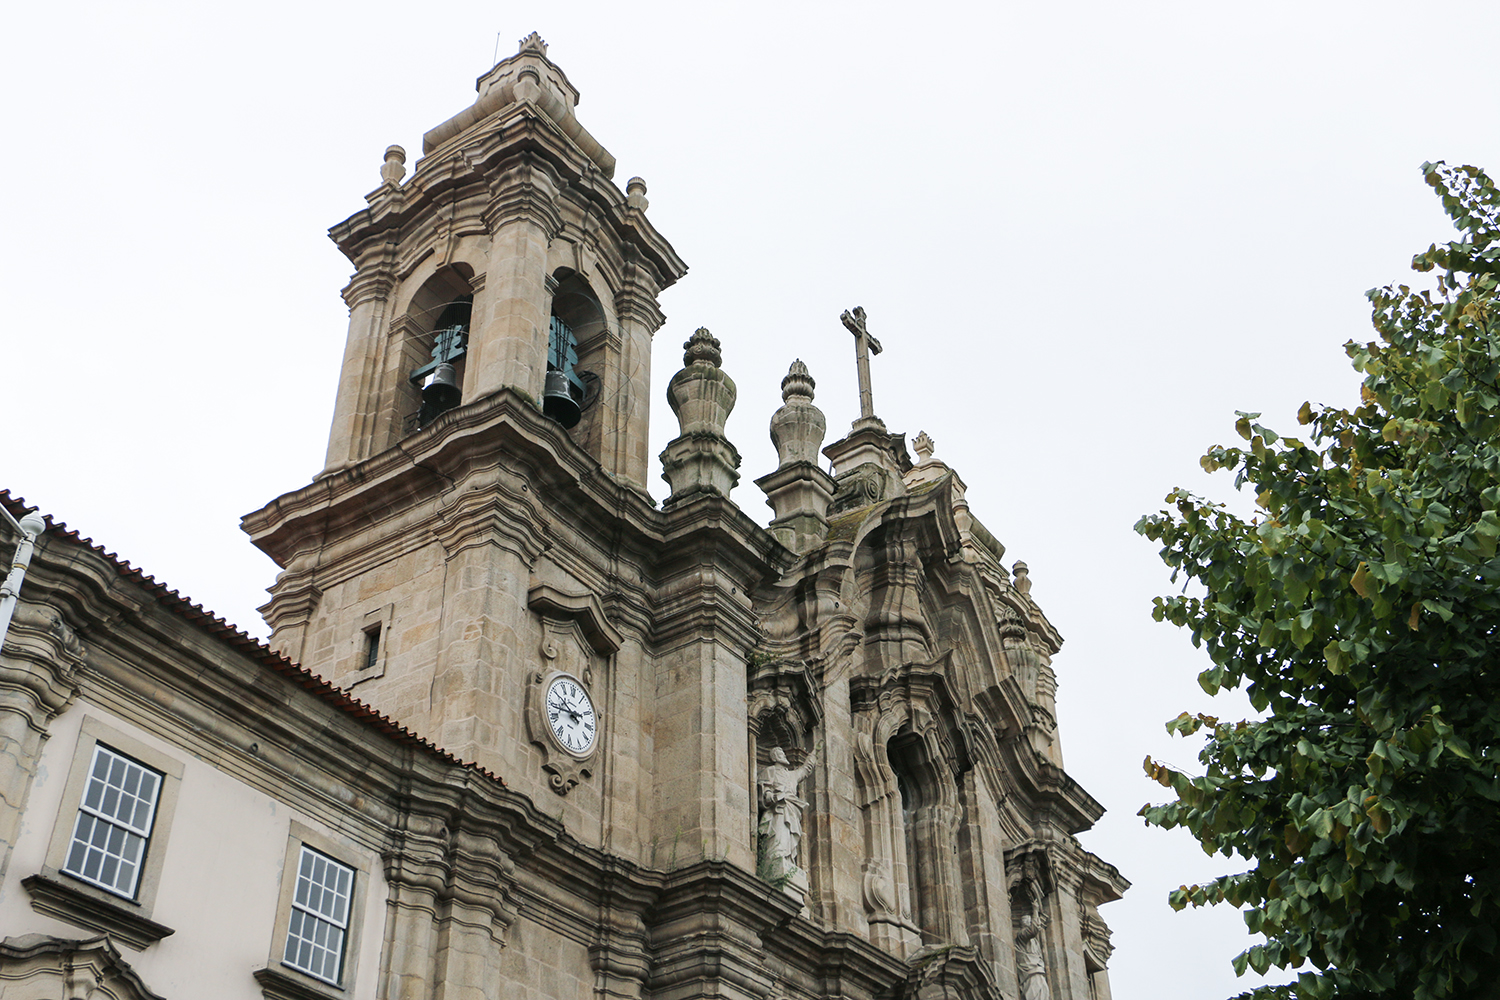 Concerto de sinos em Braga envolve sete igrejas e cerca de 70 tocadores